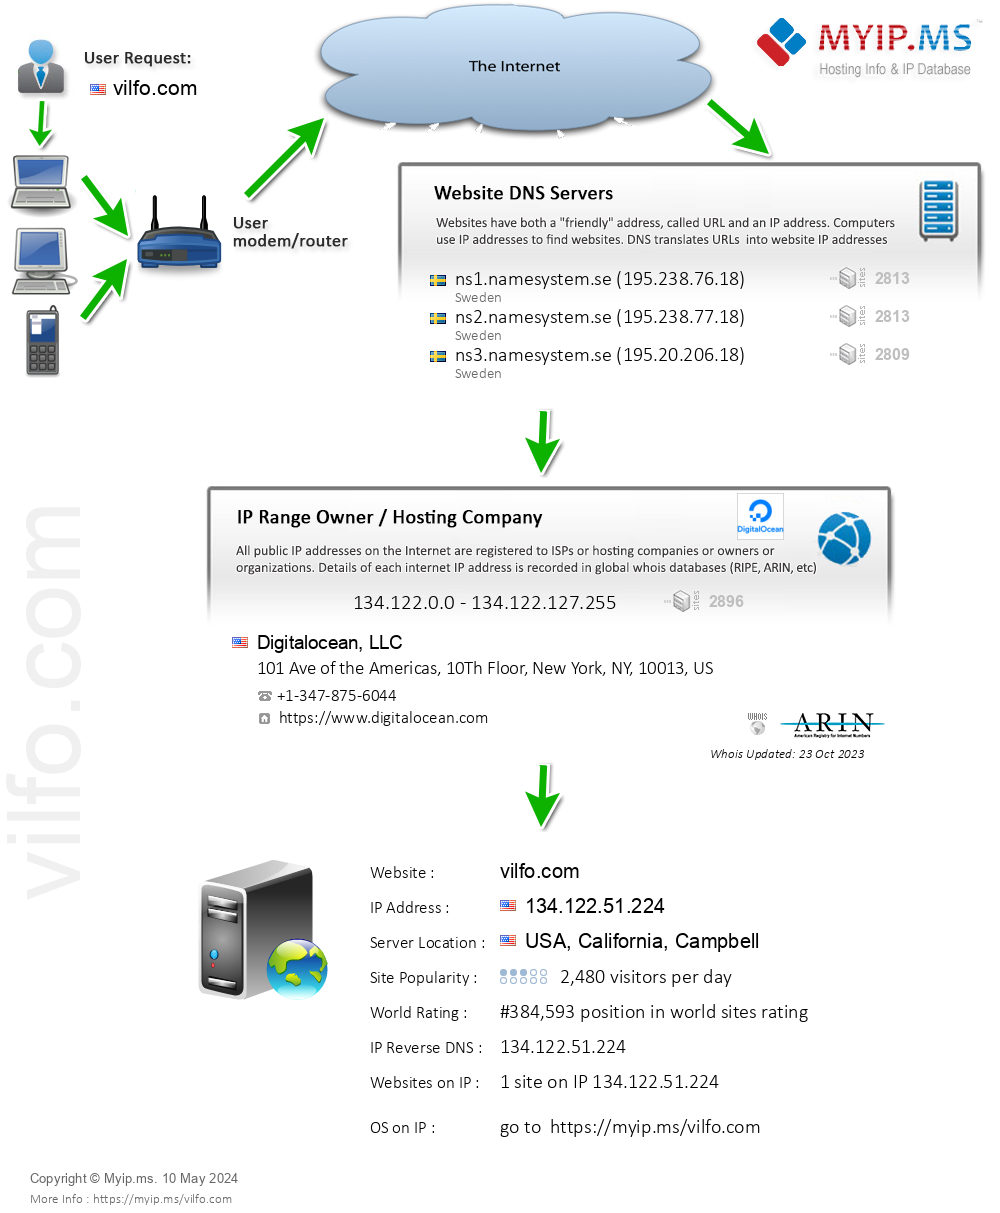 Vilfo.com - Website Hosting Visual IP Diagram